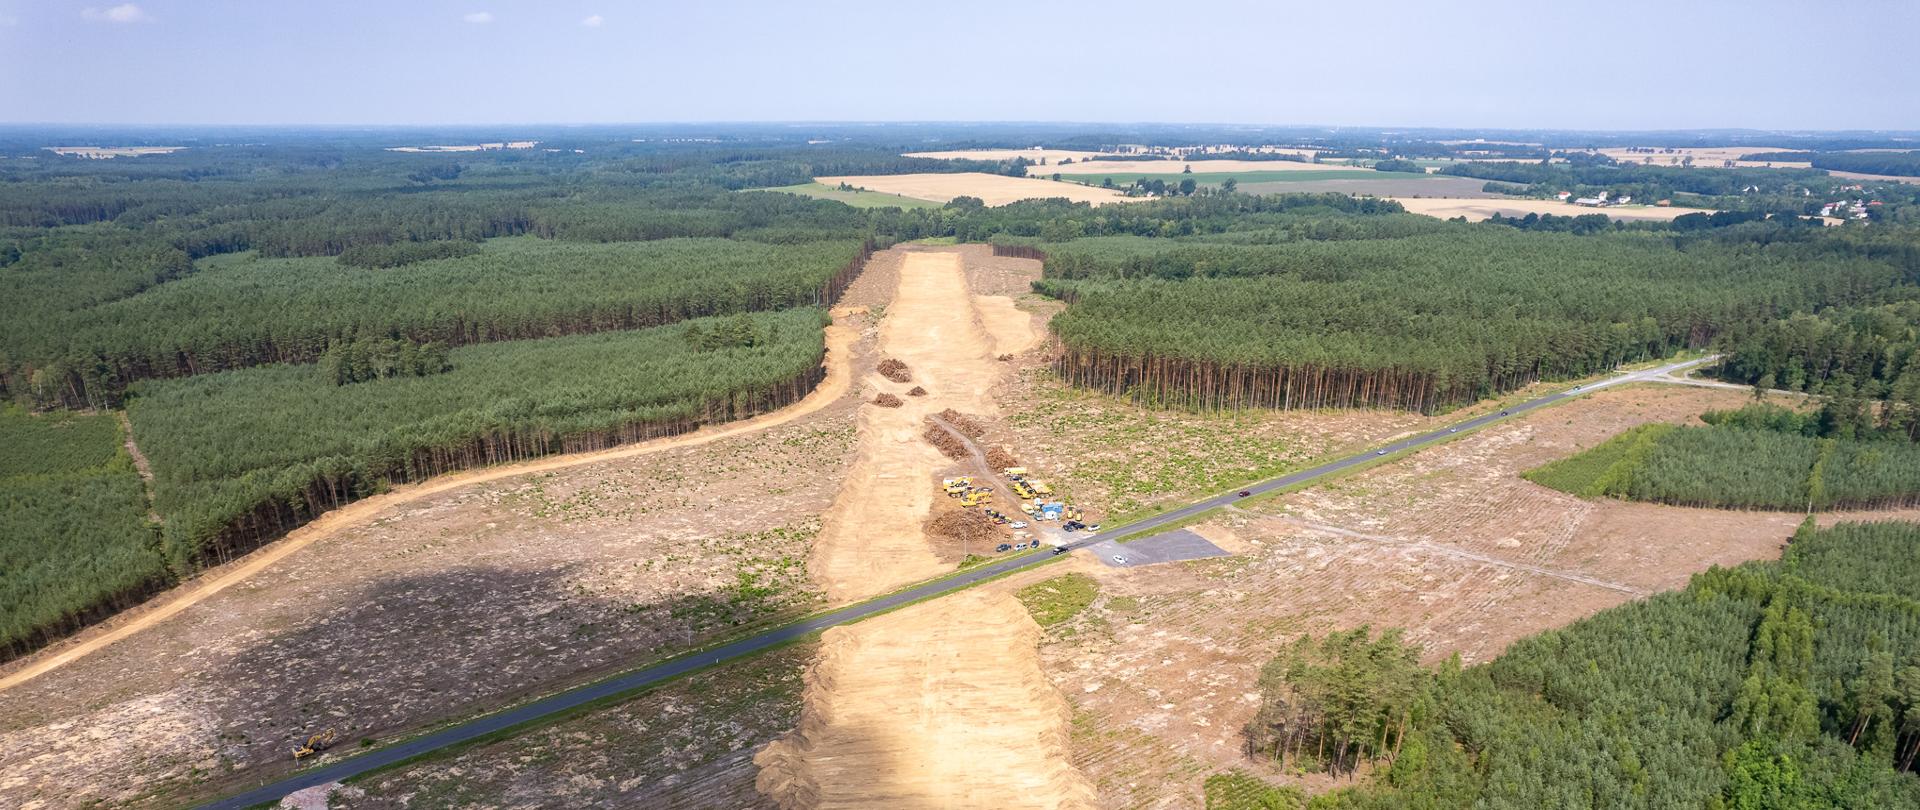 Odhumusowanie terenu na budowie S11 Koszalin - Zegrze